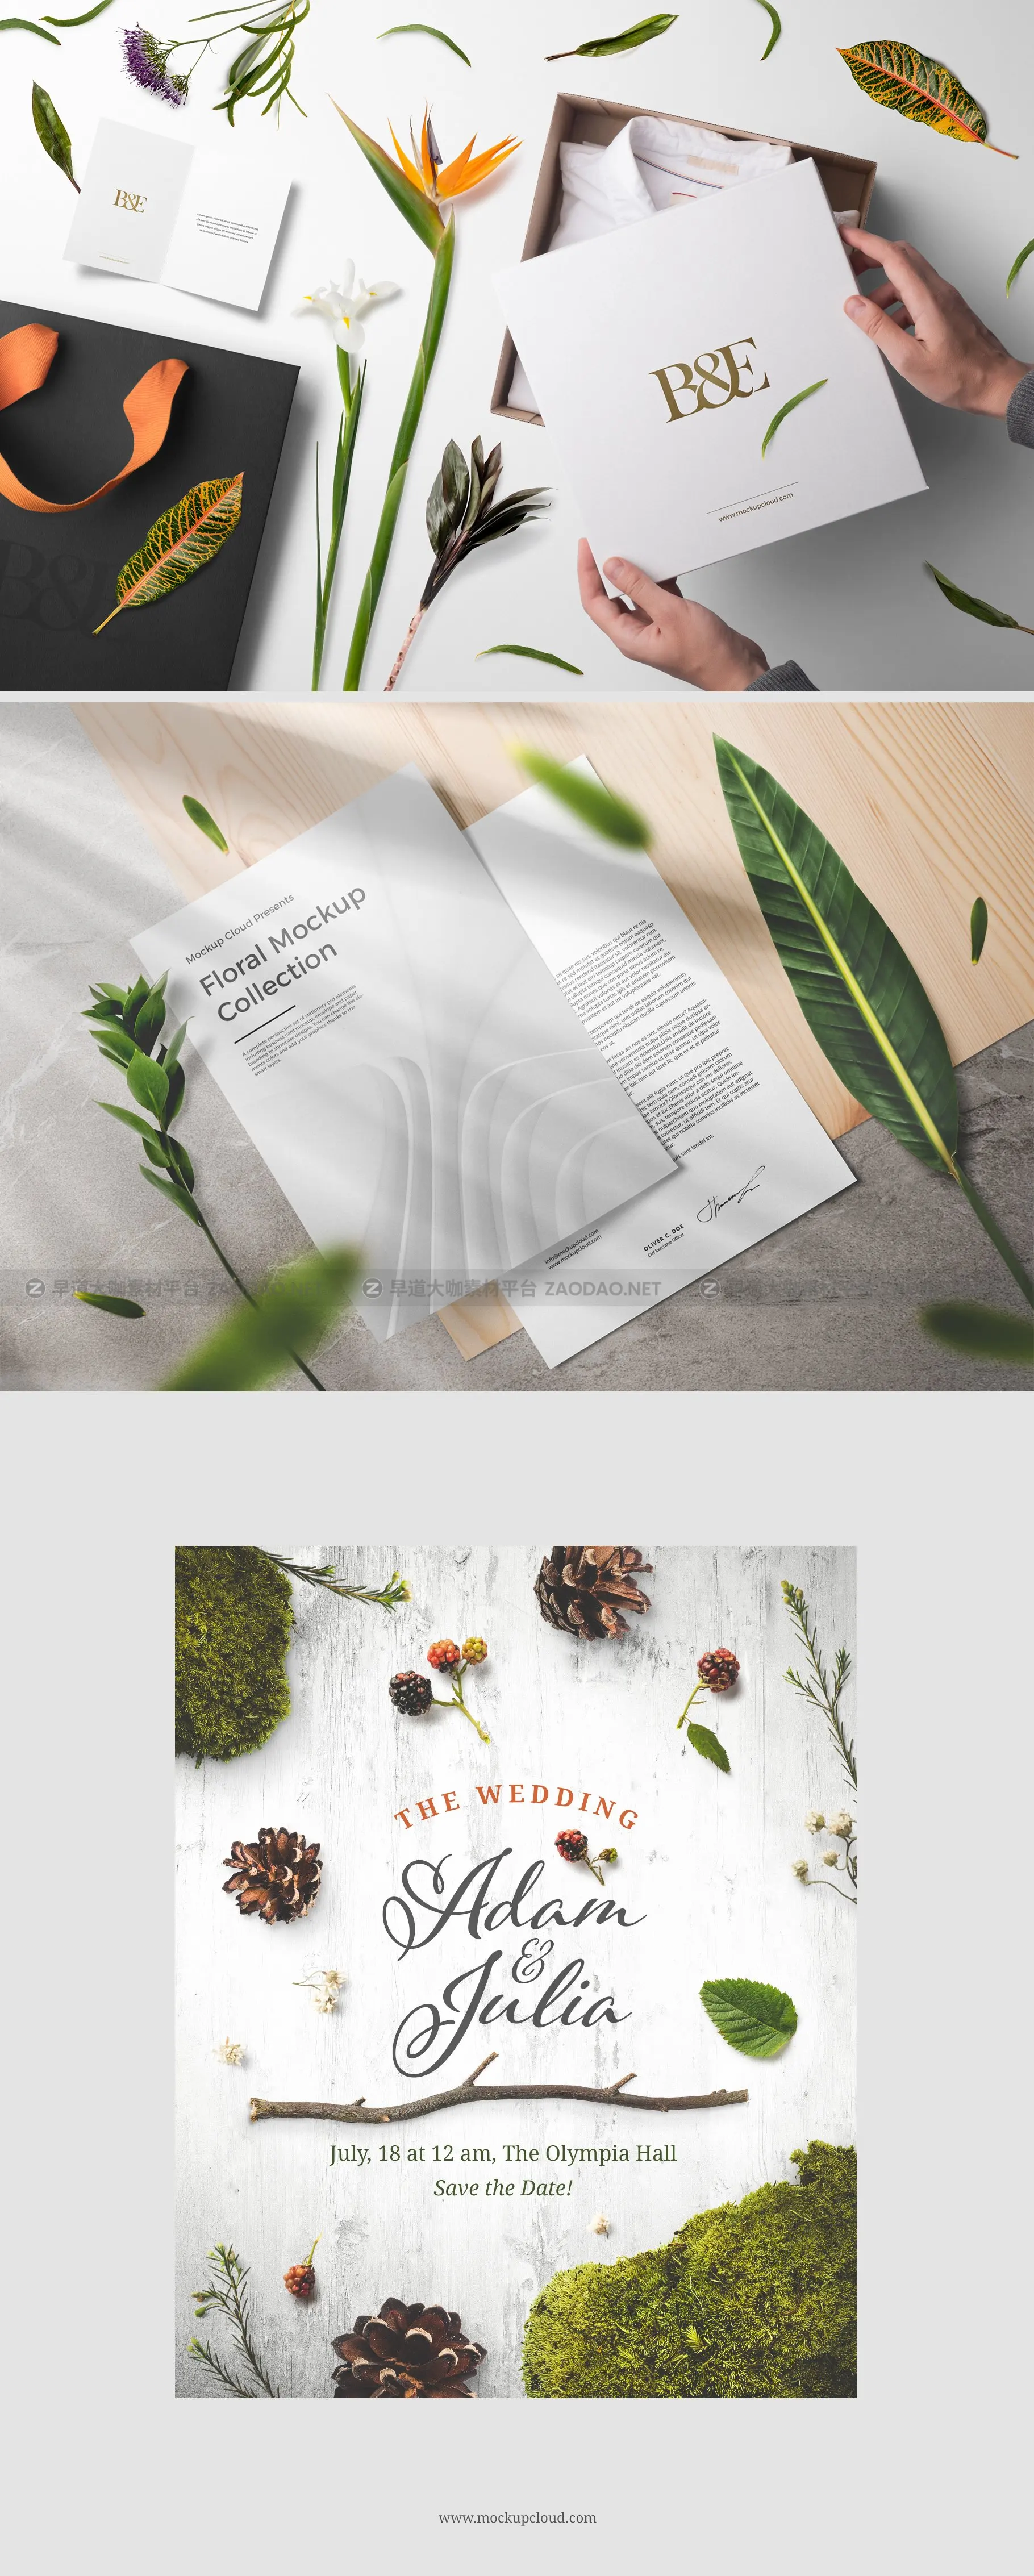 自然轻花卉植物品牌VI设计场景展示PS贴图样机模板素材 Floral Mockups Collection插图4